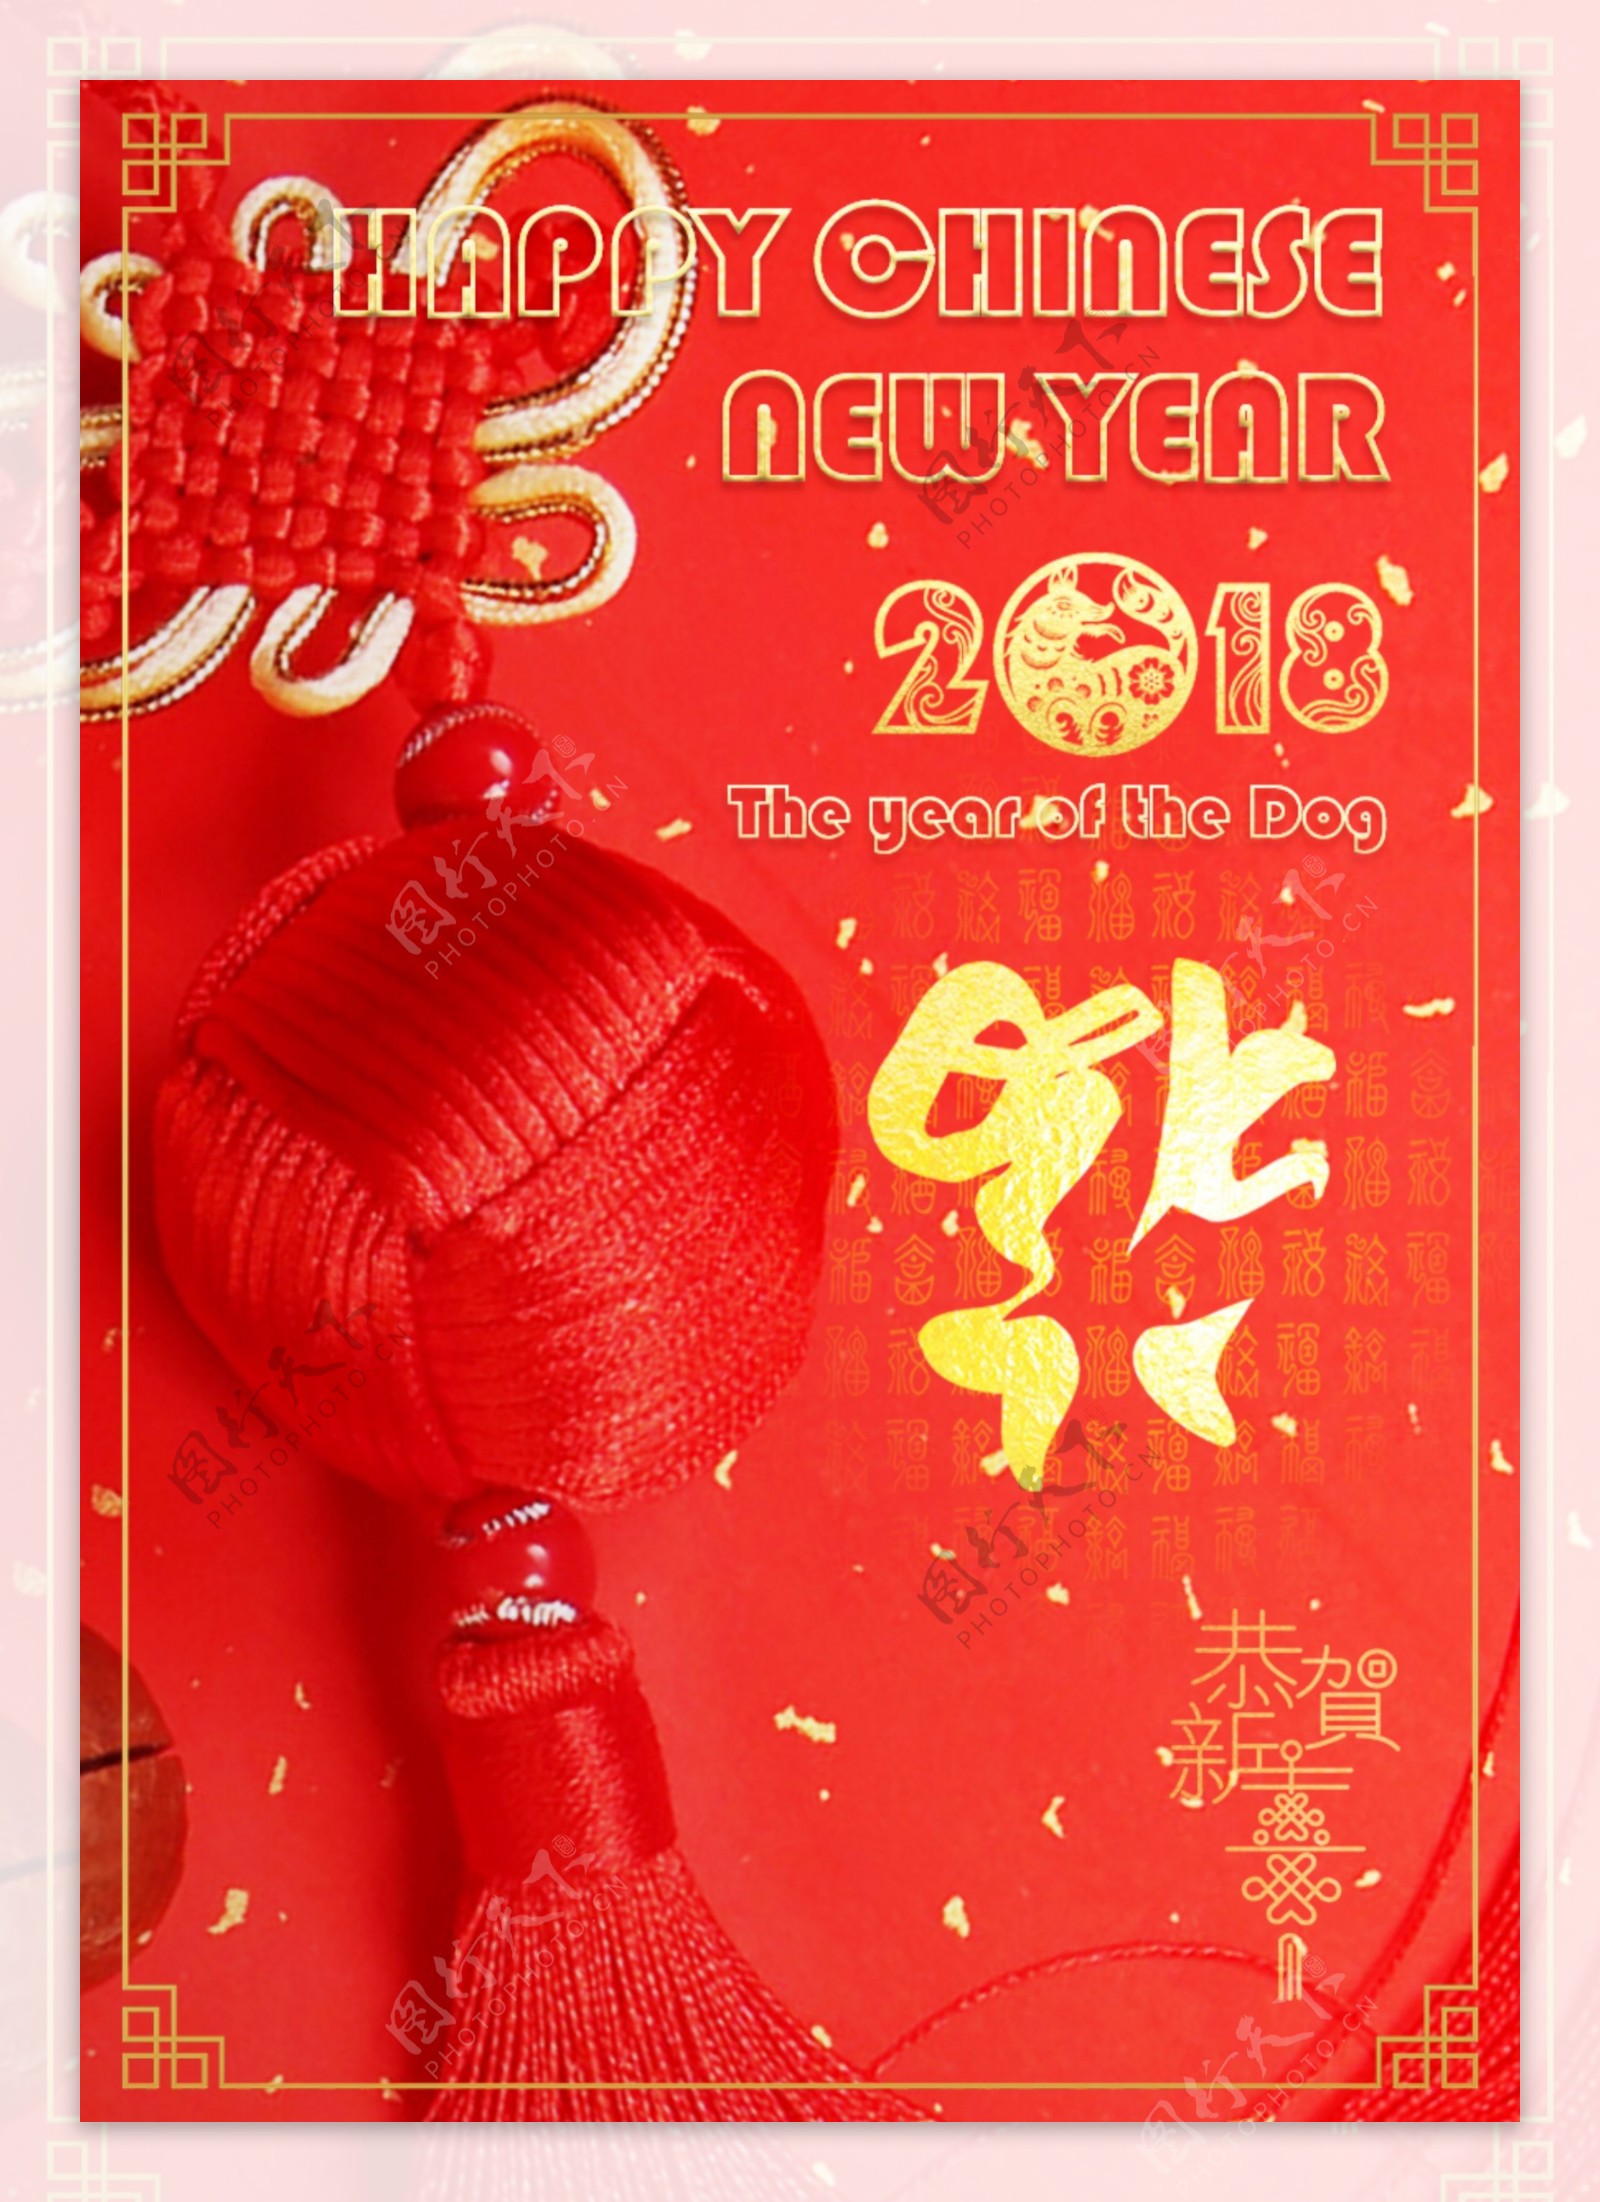 2018新春红色中国结贺卡设计PSD模板